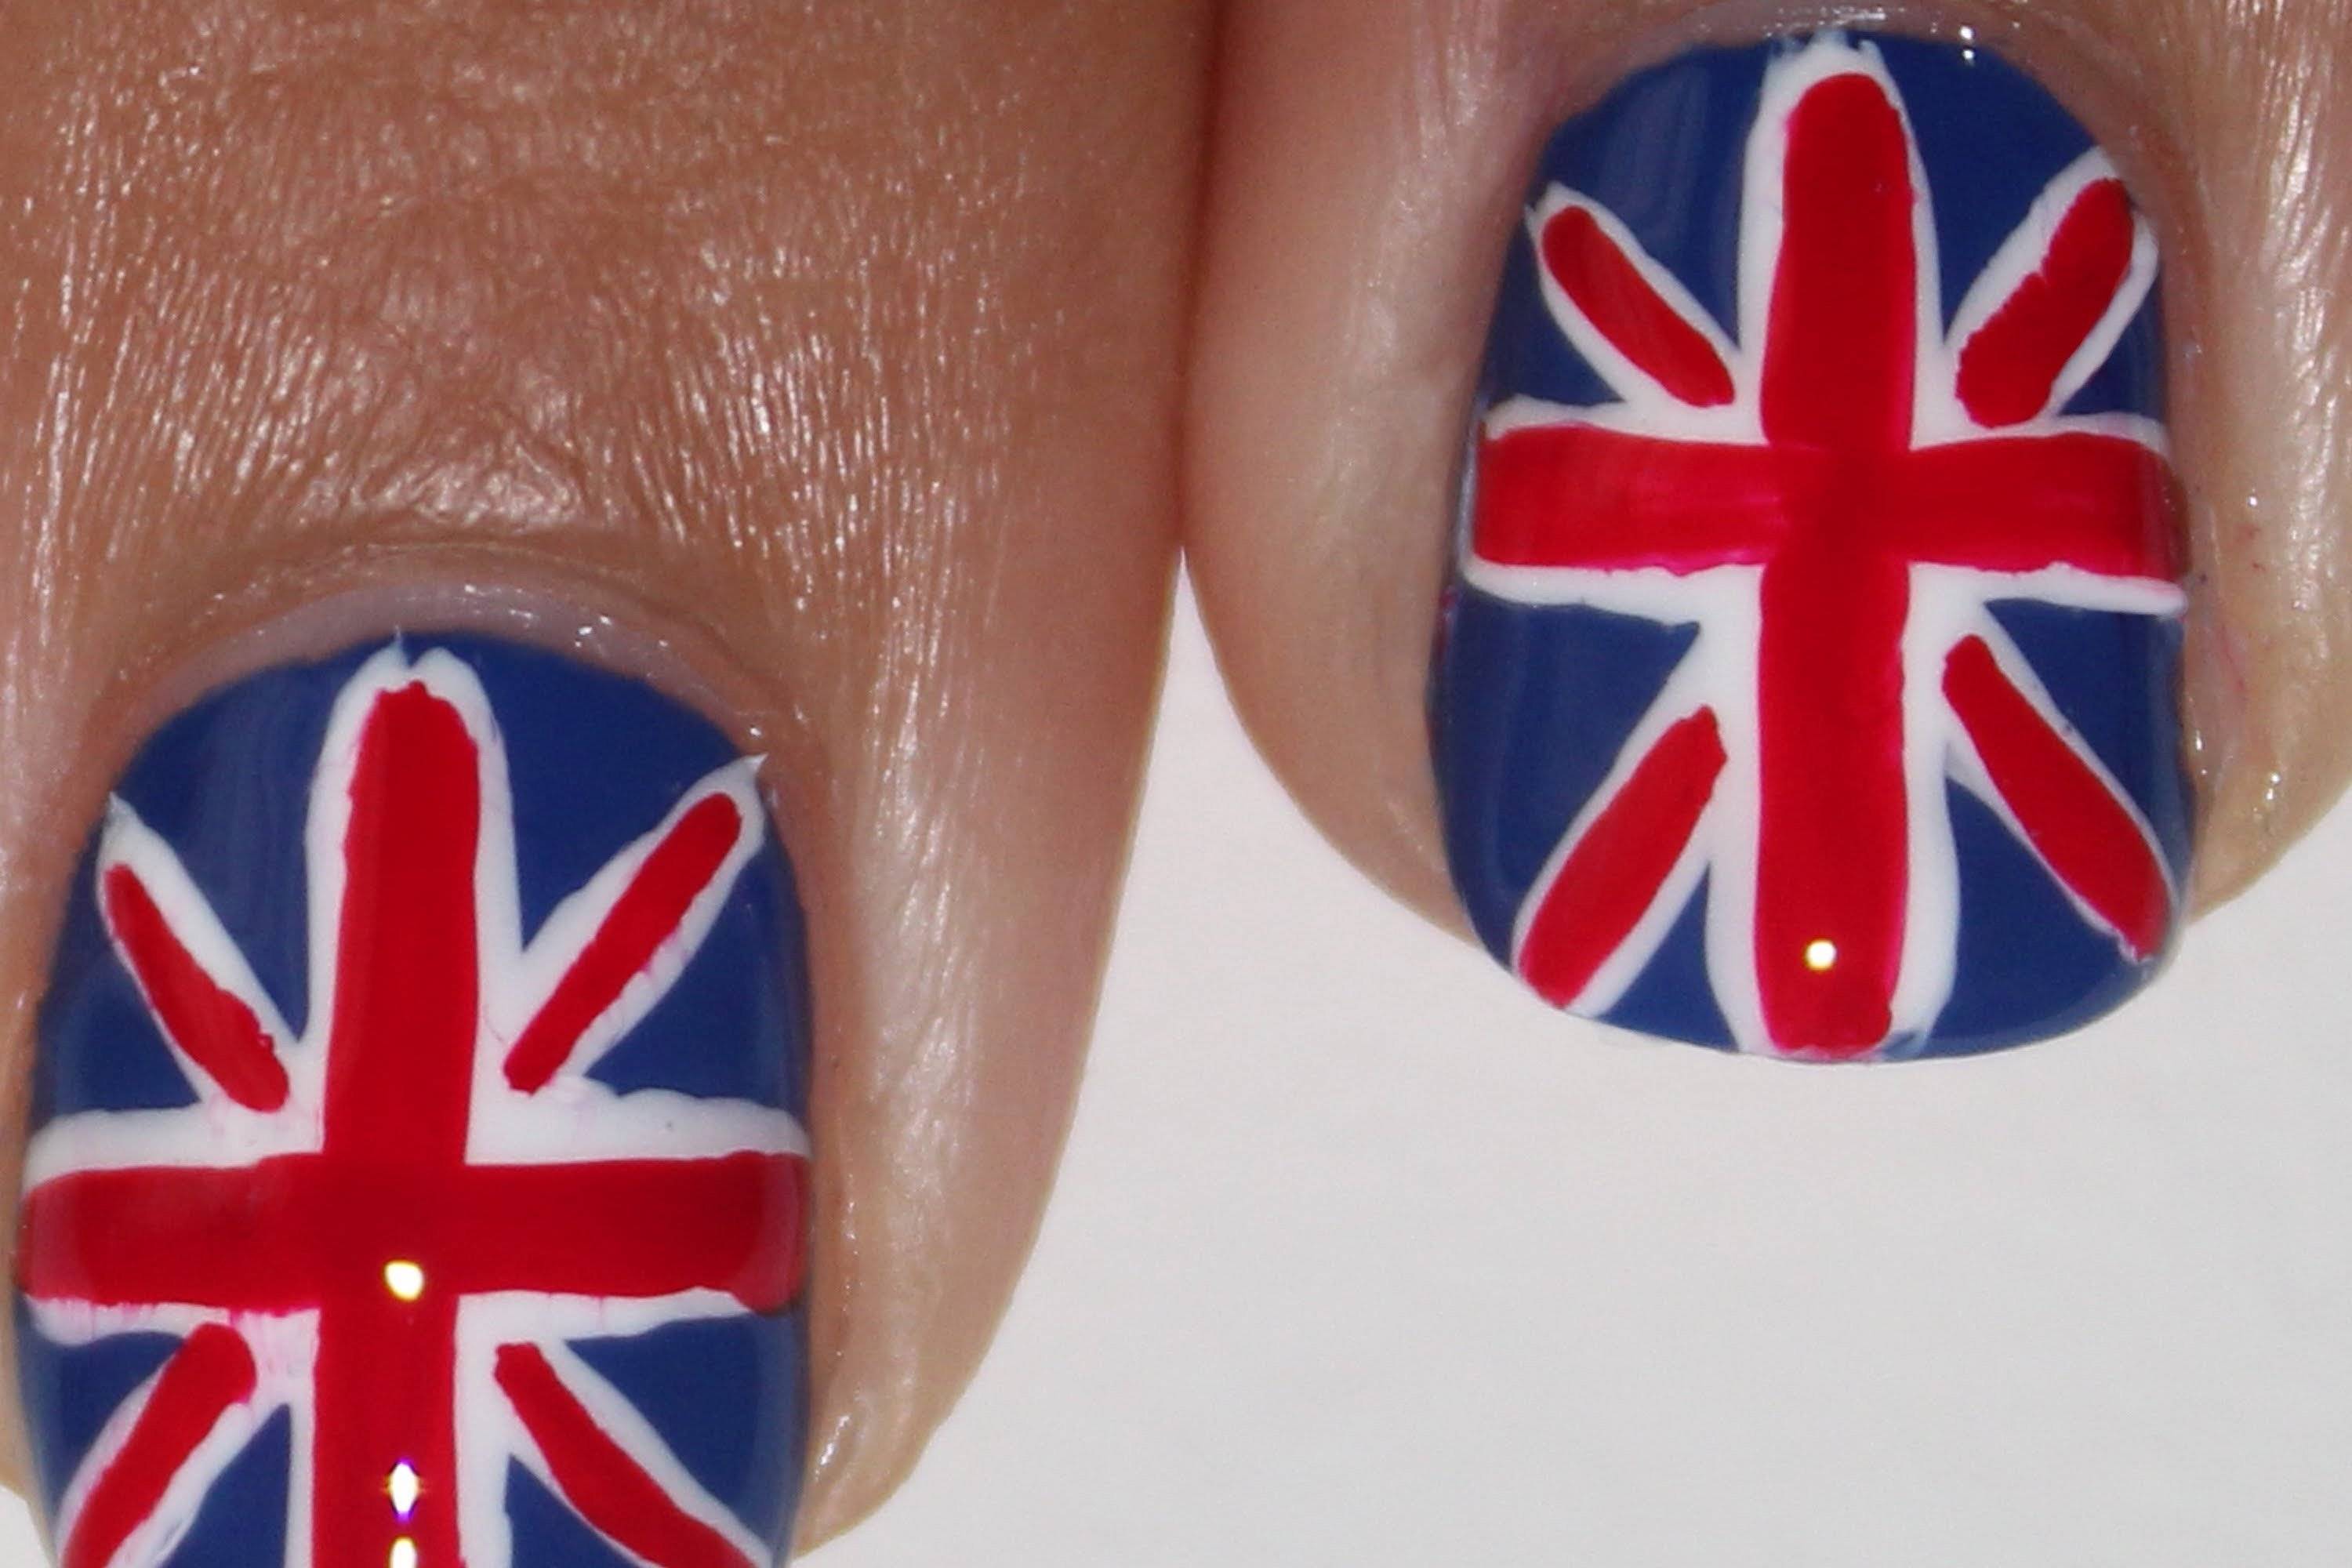 Британский флаг на ногтях: особенности и процедура выполнения